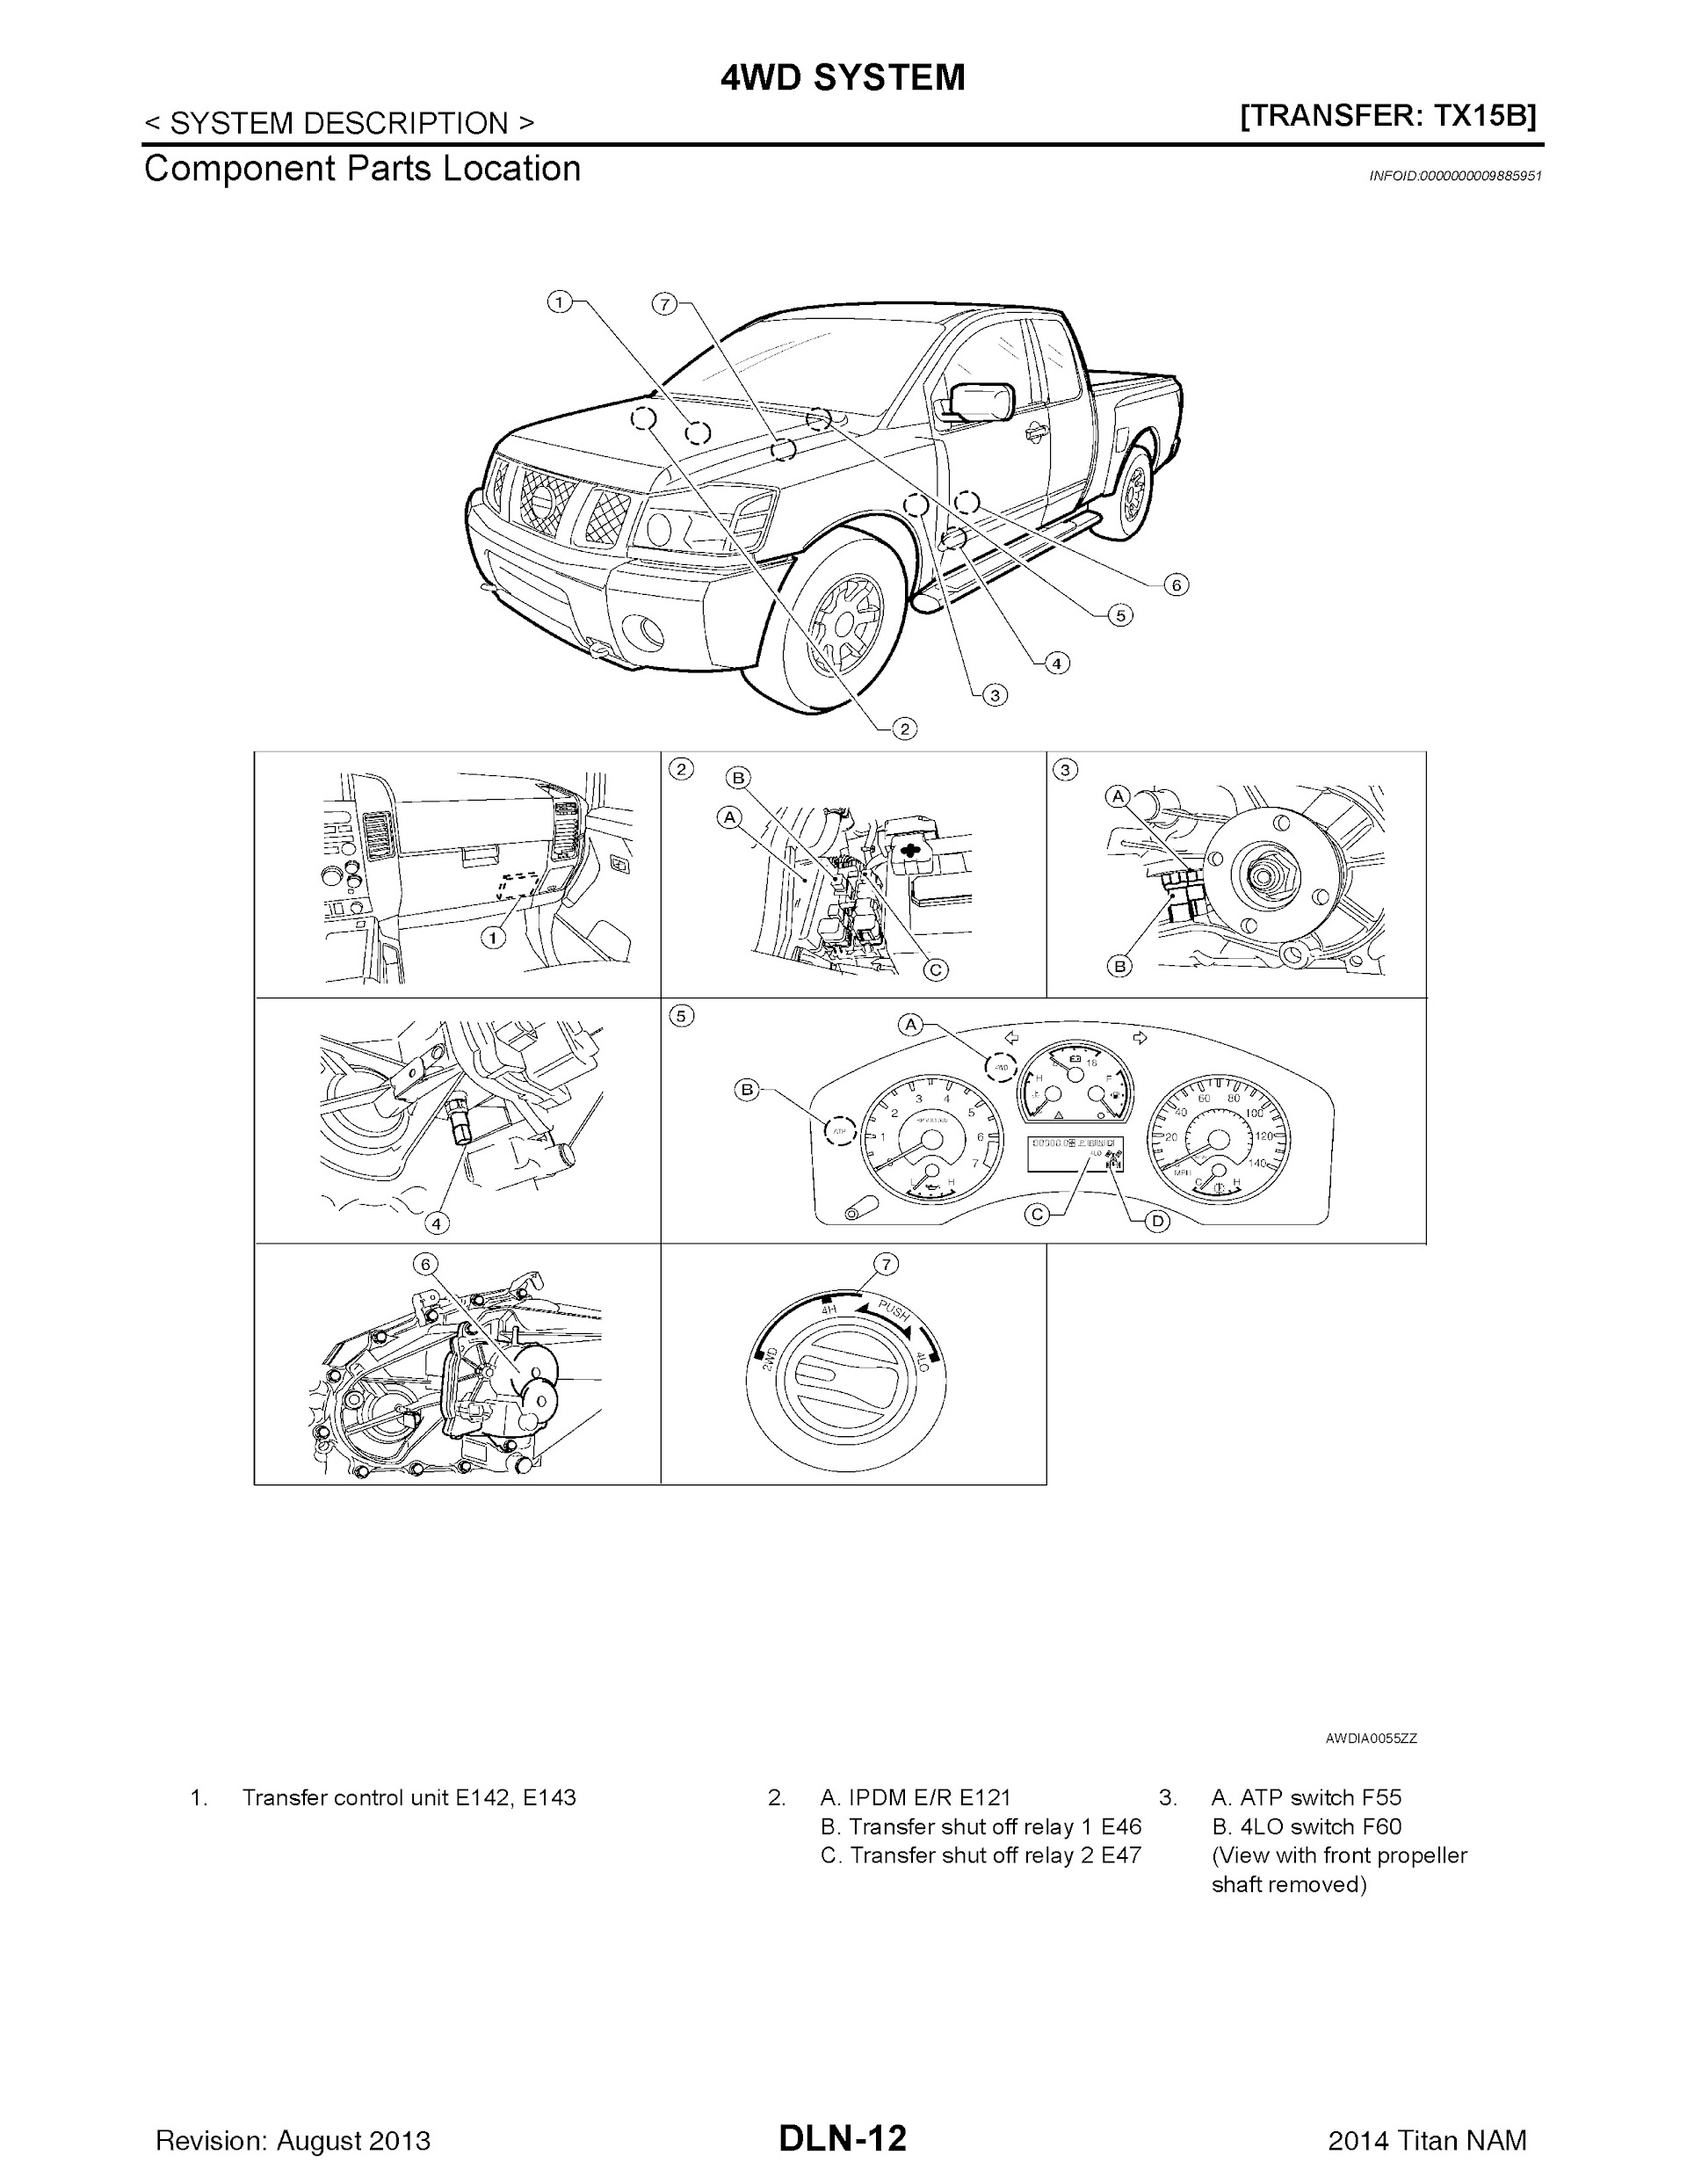 Download 2014 Nissan Titan Repair Manual.